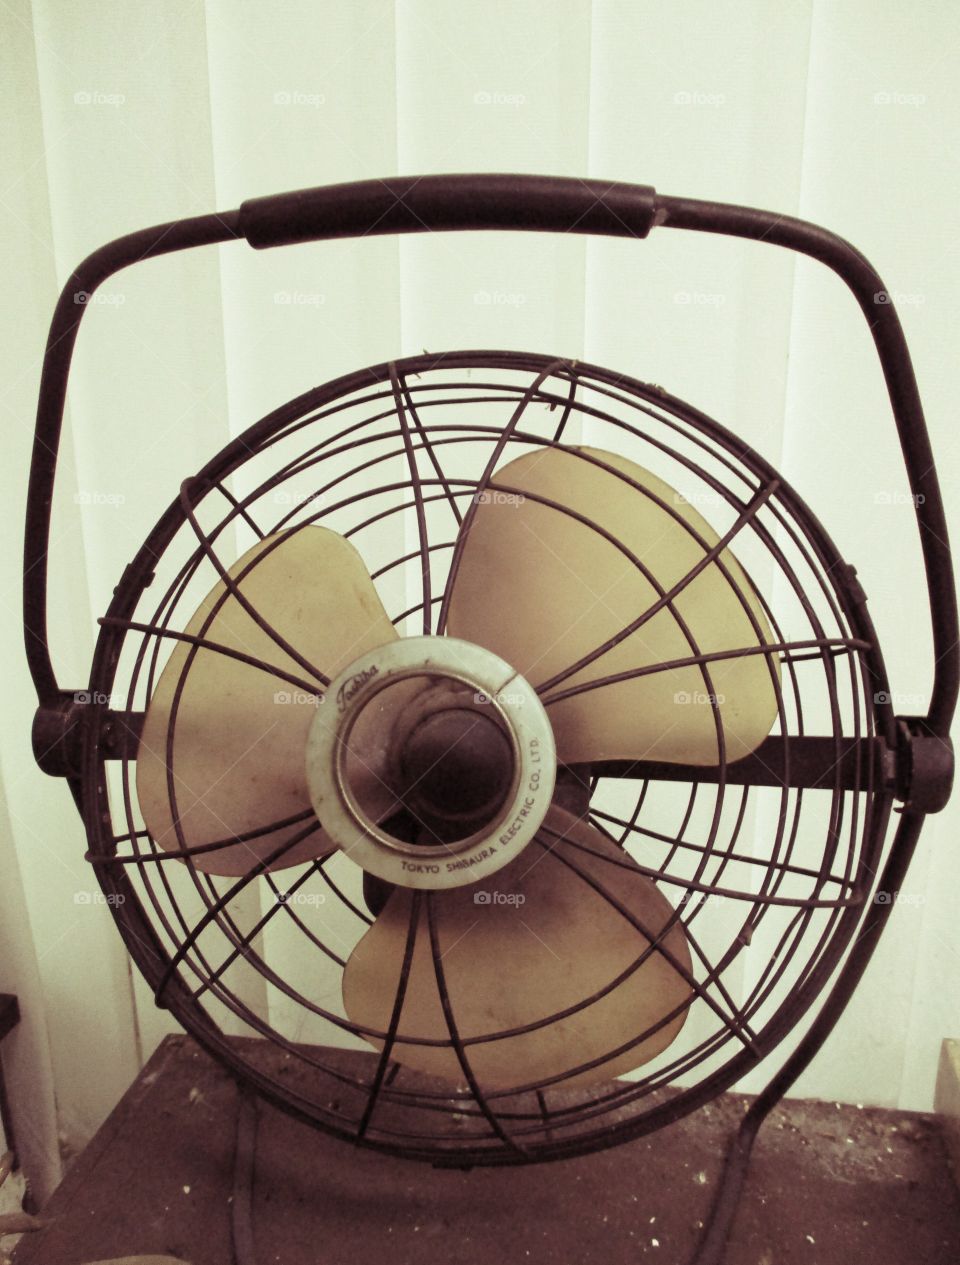 Fan in vintage style